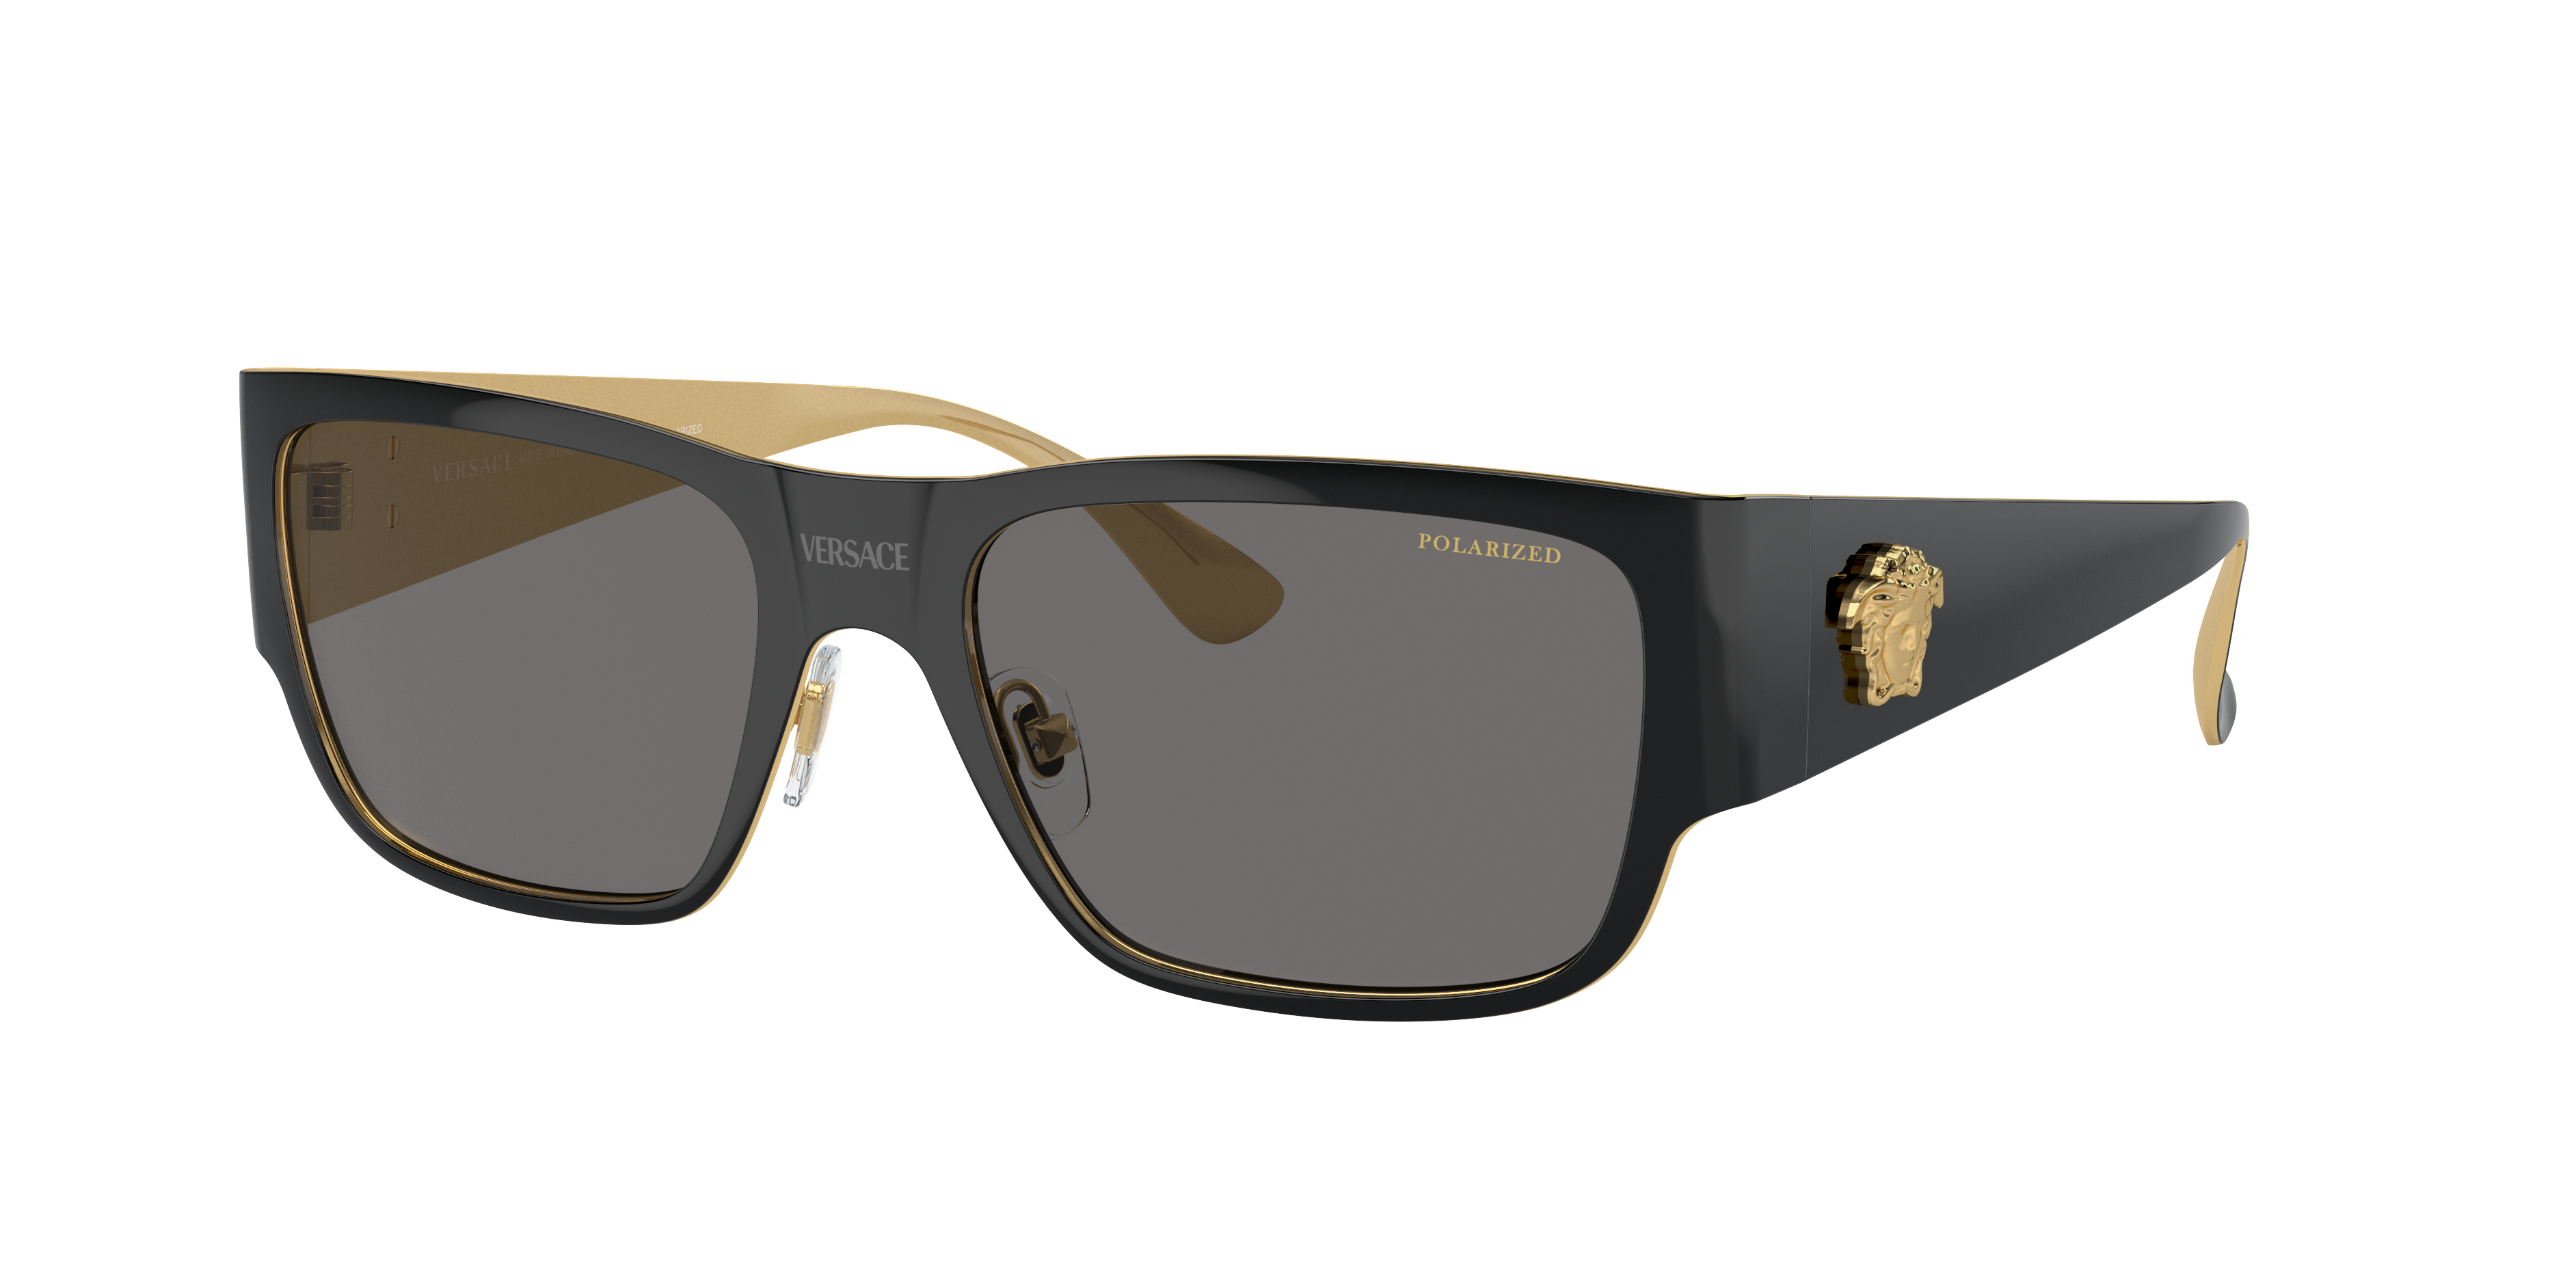 VERSACE VE2262 Black - Men Luxury Sunglasses, Dark Grey Polarized Lens